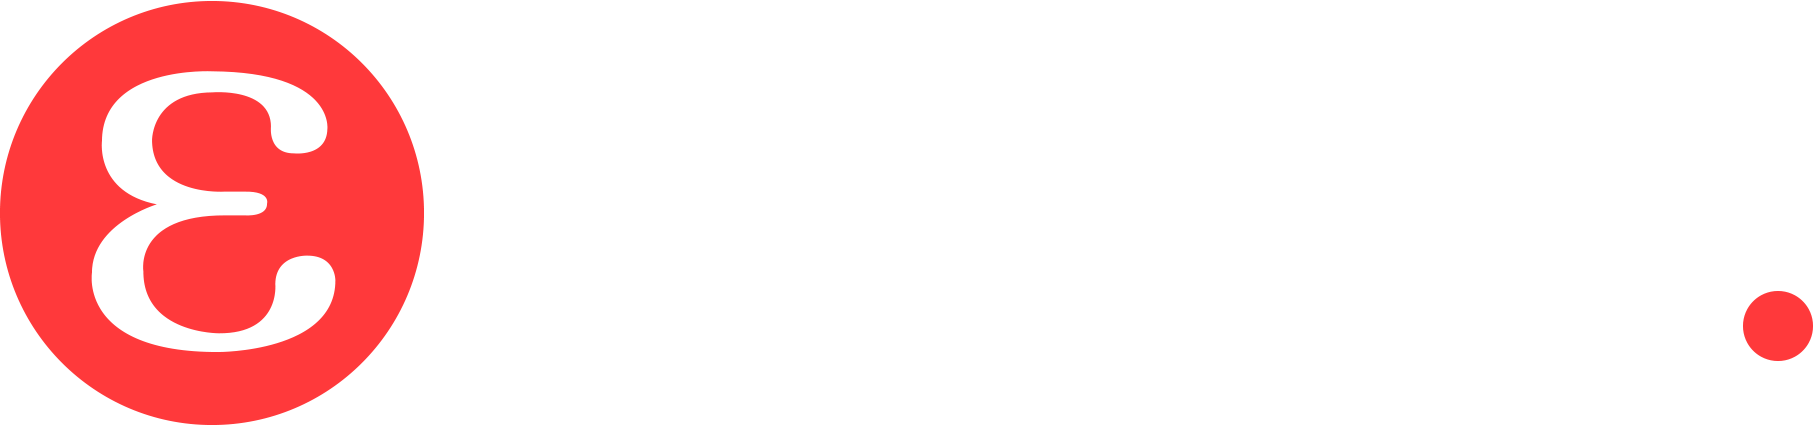 Eteria logo